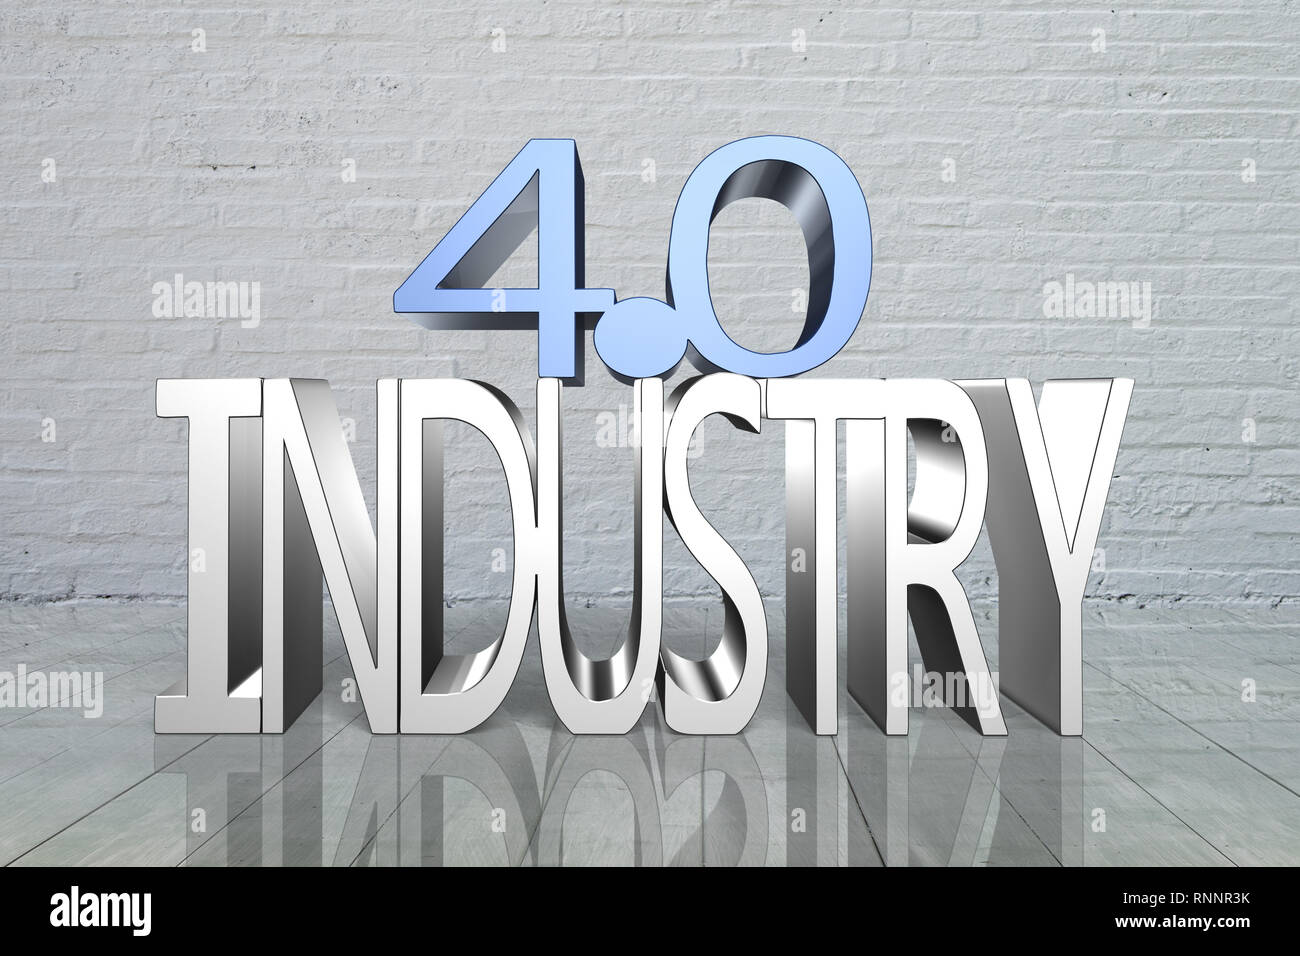 Concept de l'industrie 4.0. Texte 3D de l'industrie 4.0, avec des briques mur arrière-plan. Banque D'Images